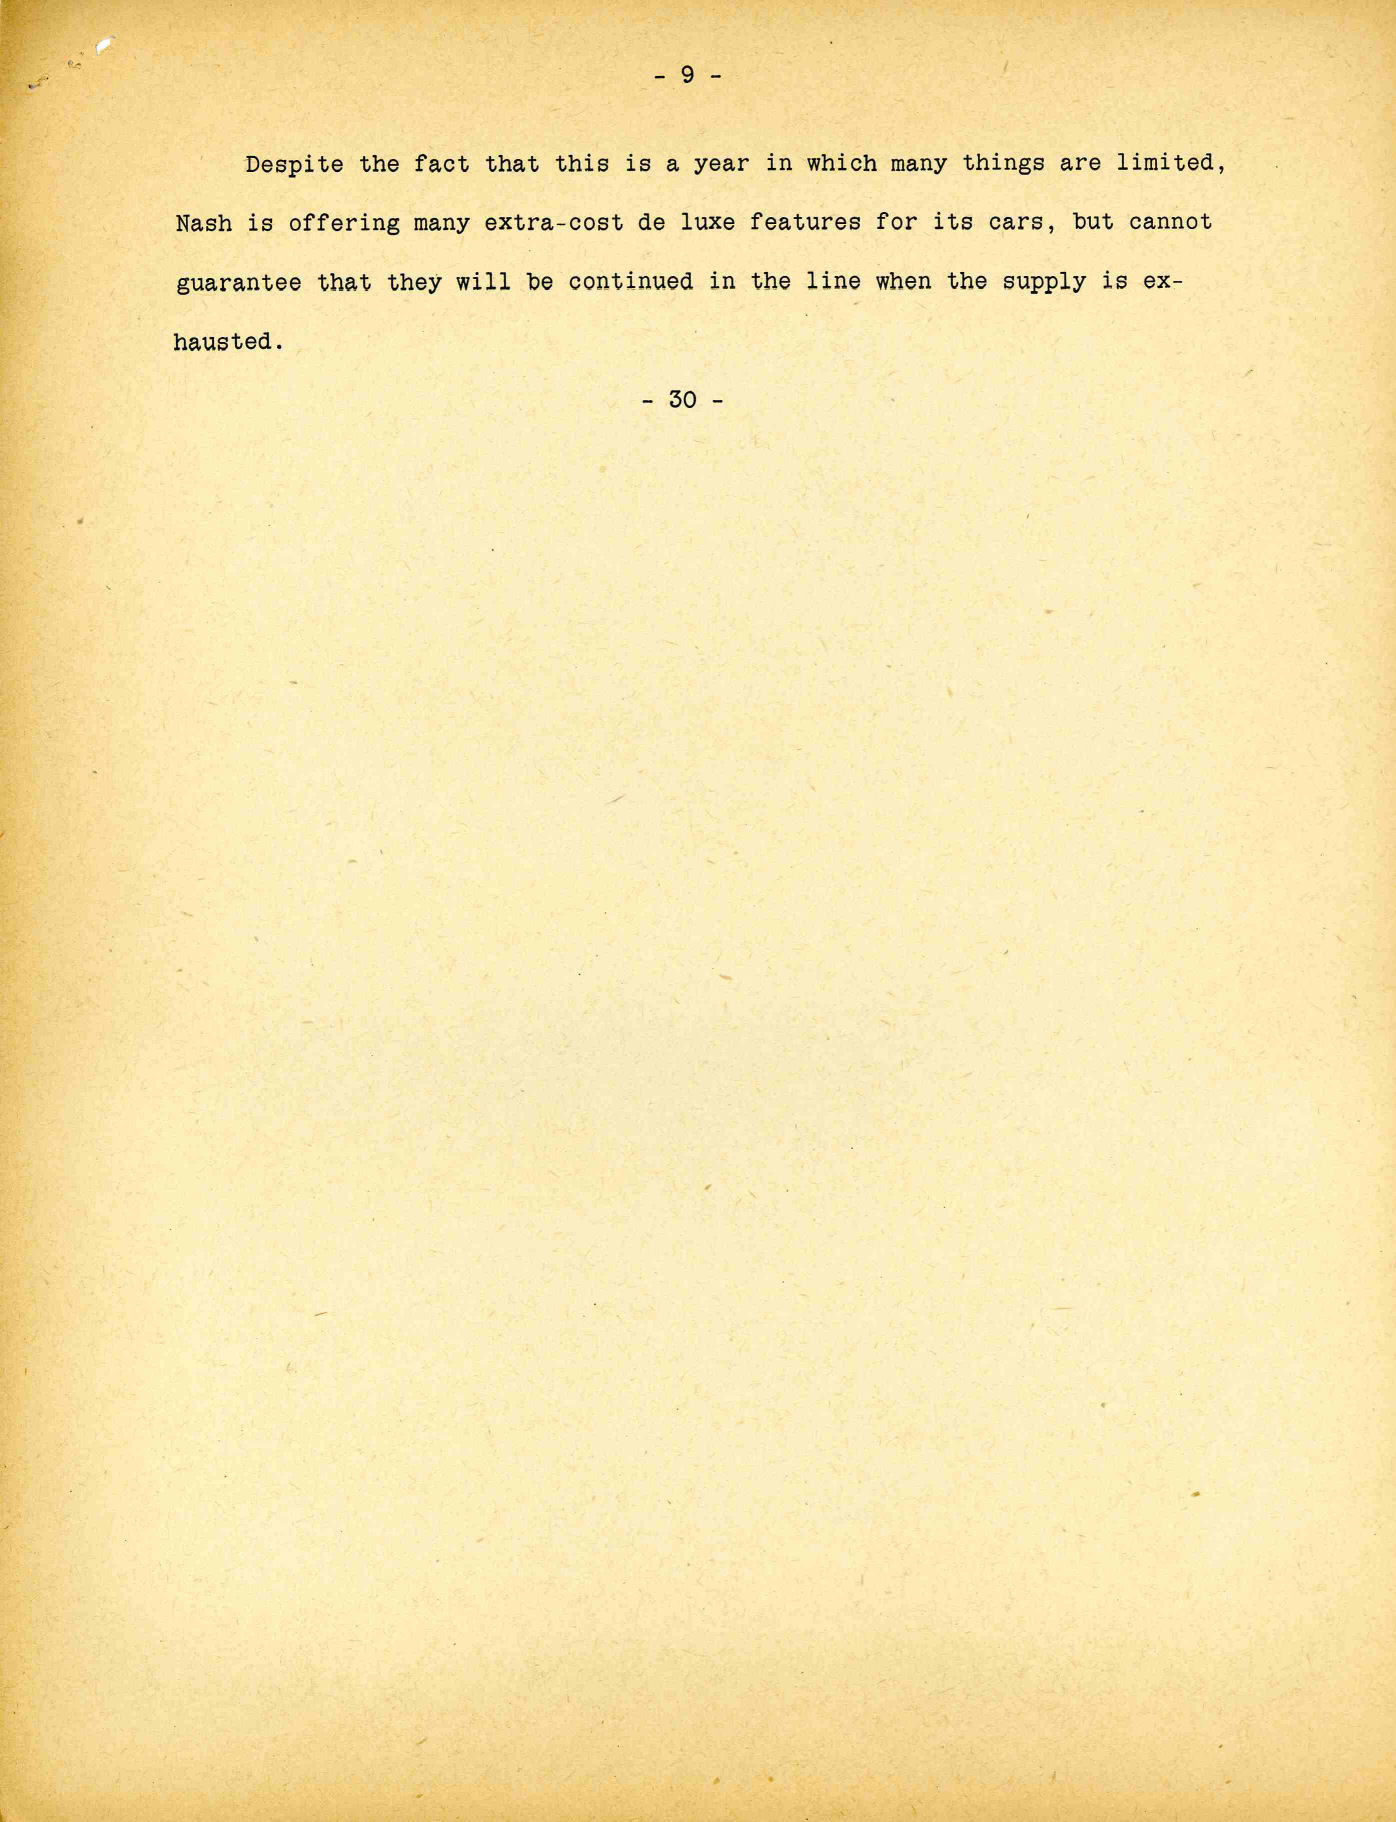 1942_Nash_Press_Kit-c09